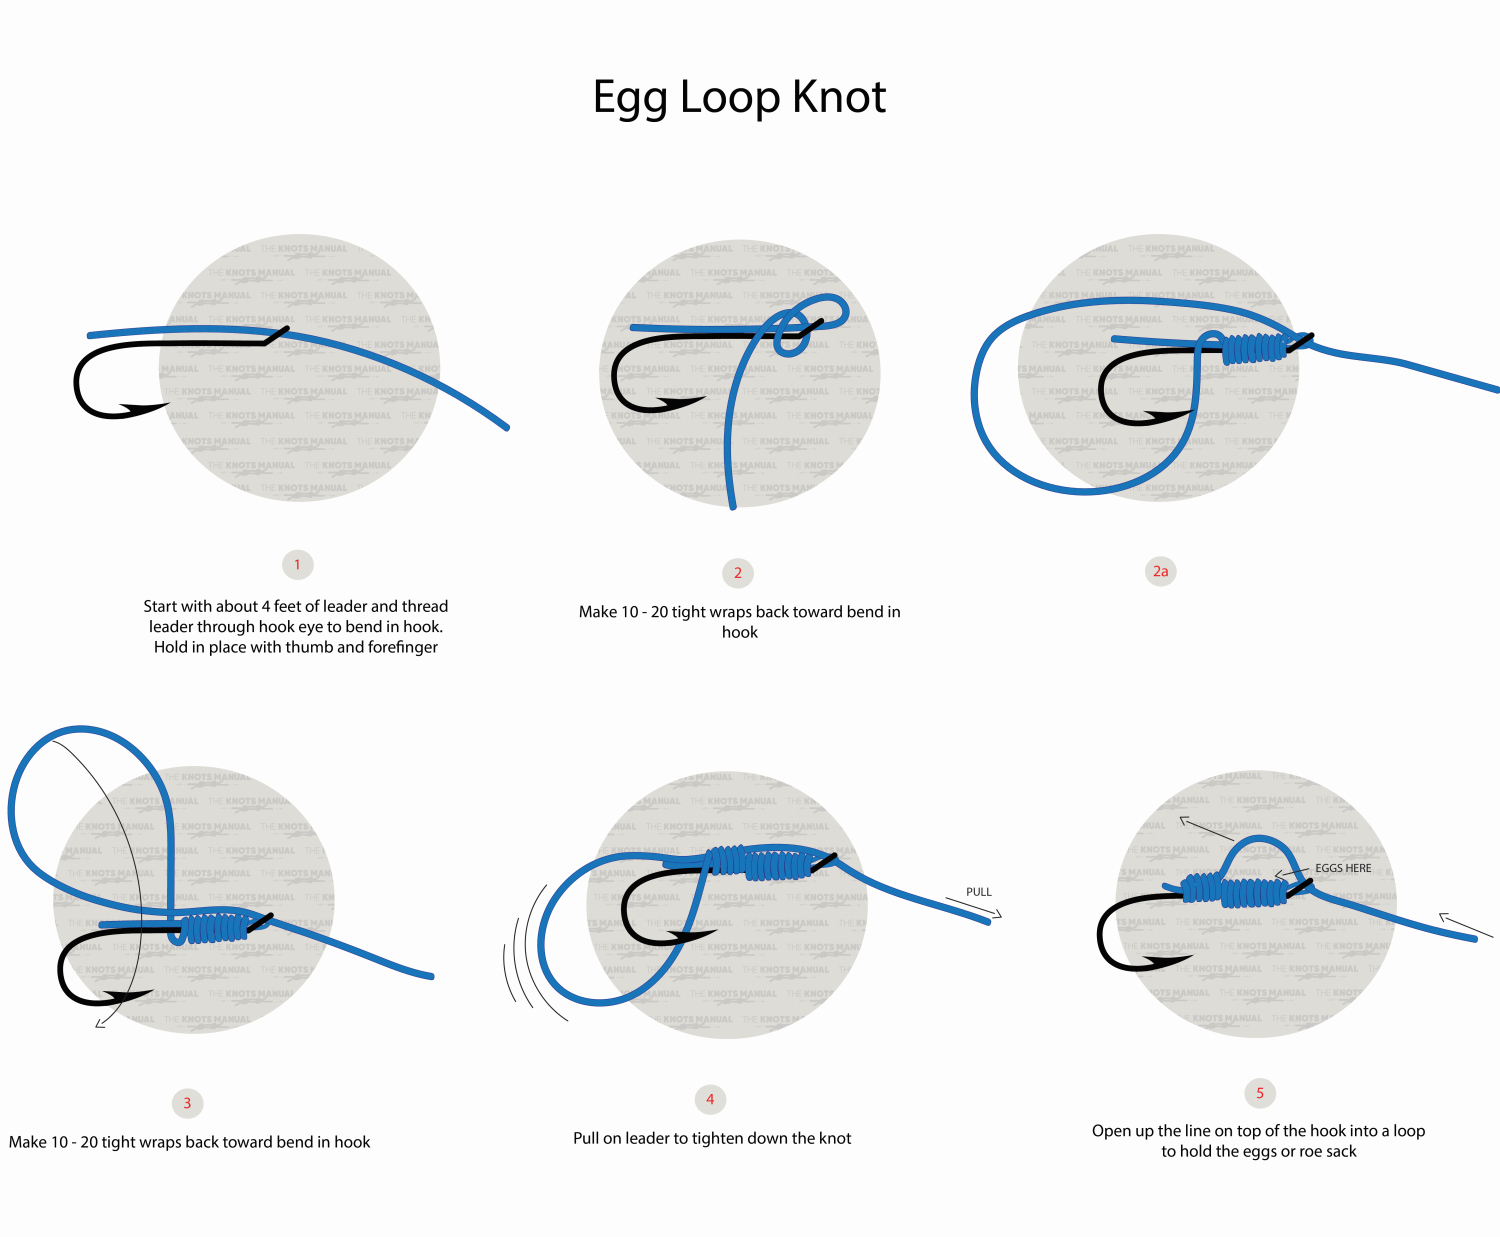 Egg Loop Knot Step by Step